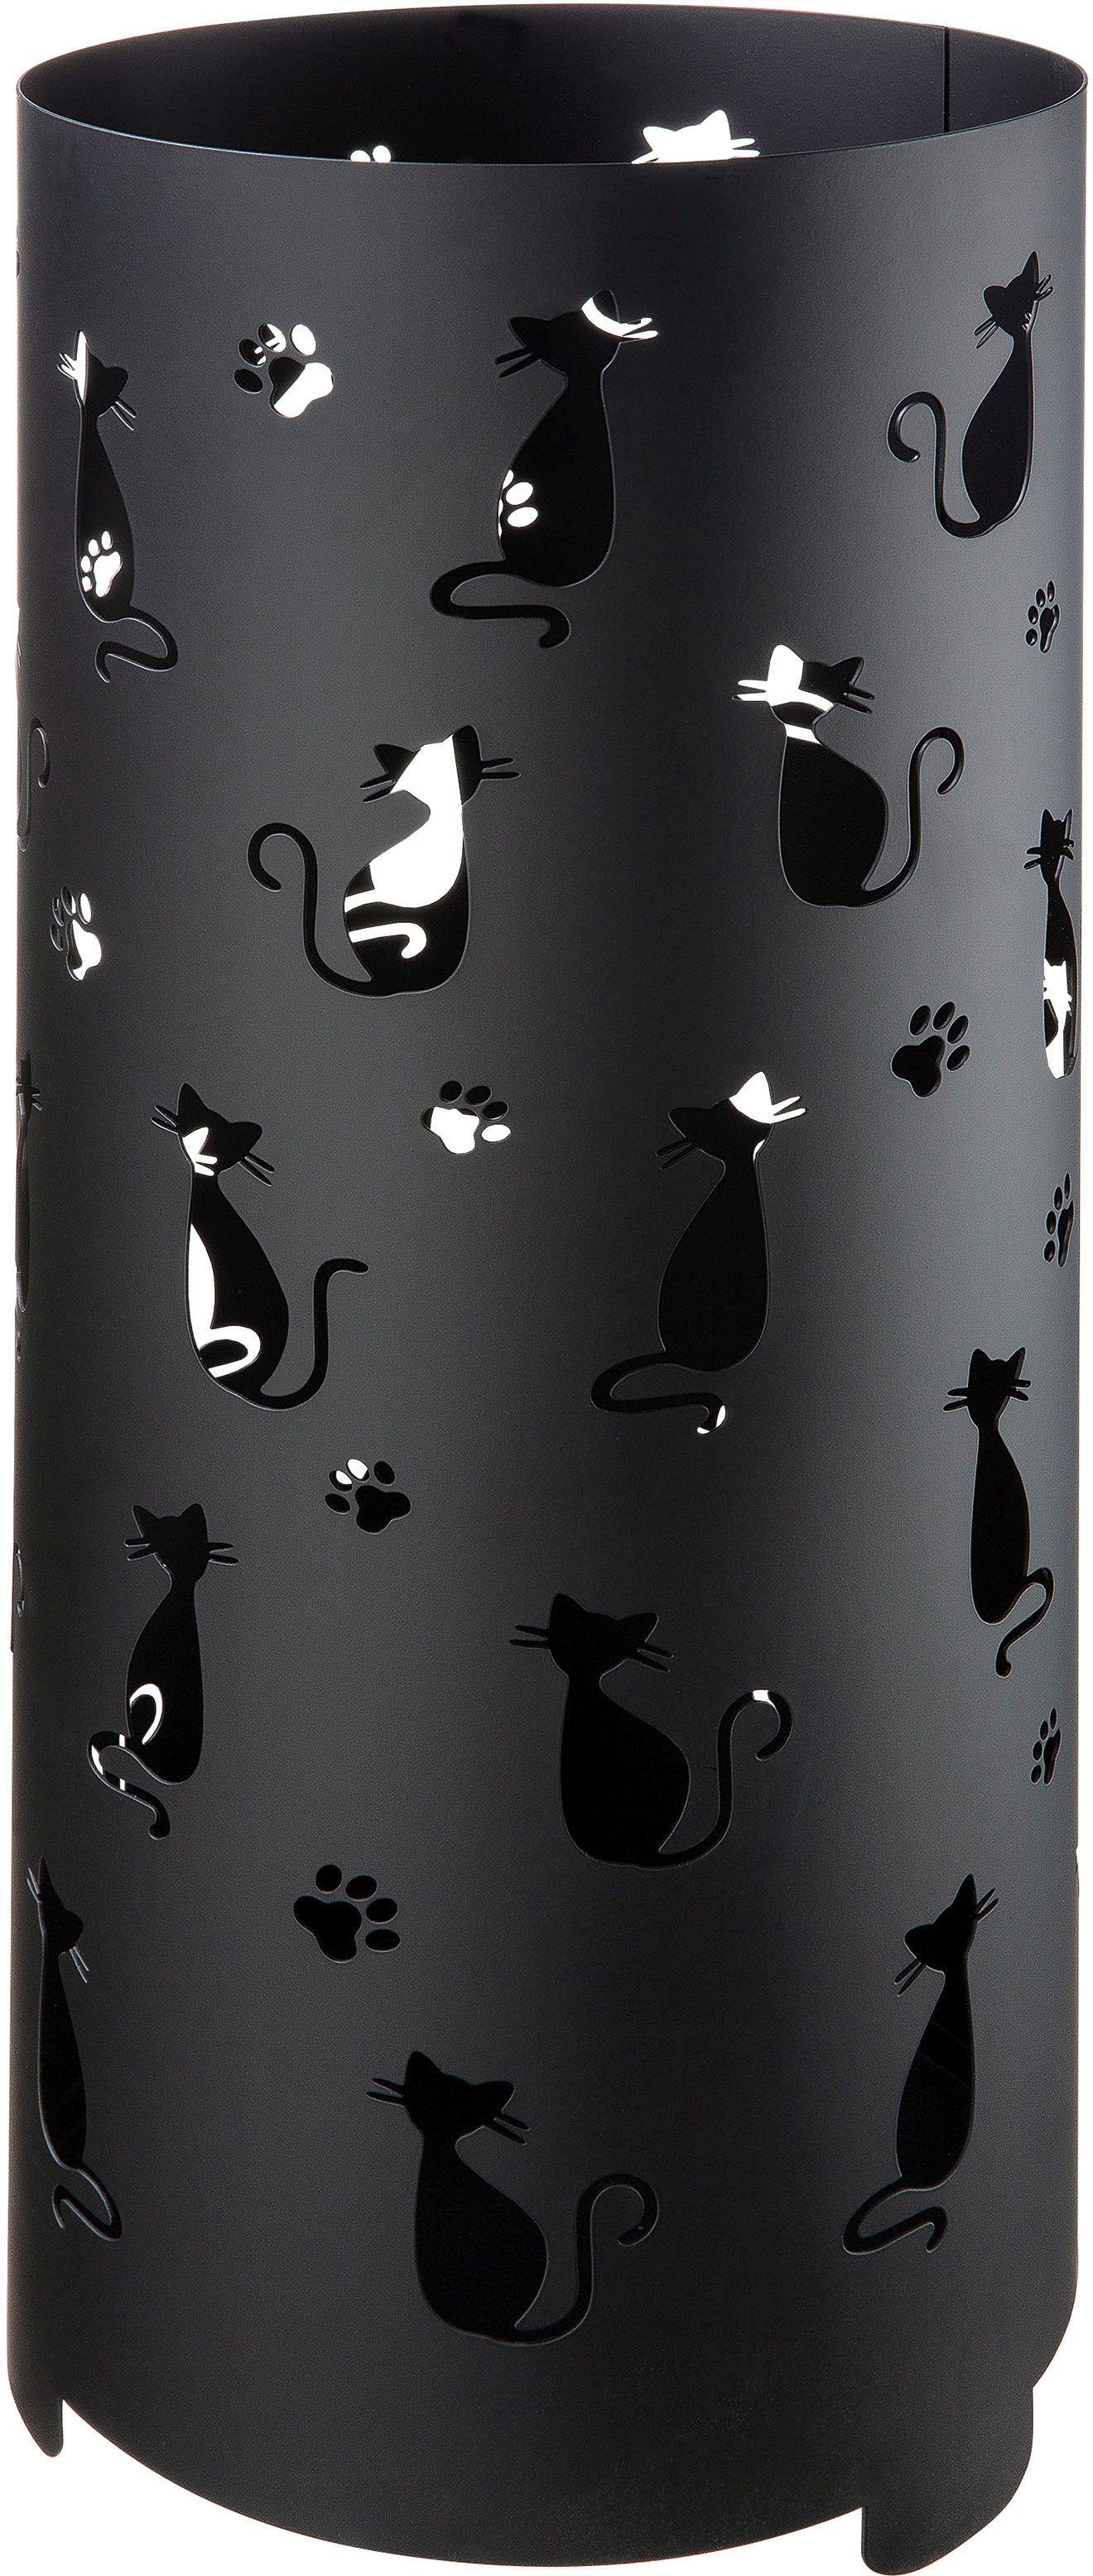 Image of GILDE Schirmständer »Regenschirmständer Cats, schwarz«, (1 St.), für Regenschirme, Höhe 55 cm, rund, Ø 21 cm, handgefertigt, aus Metall, mit Motivausstanzung bei Ackermann Versand Schweiz